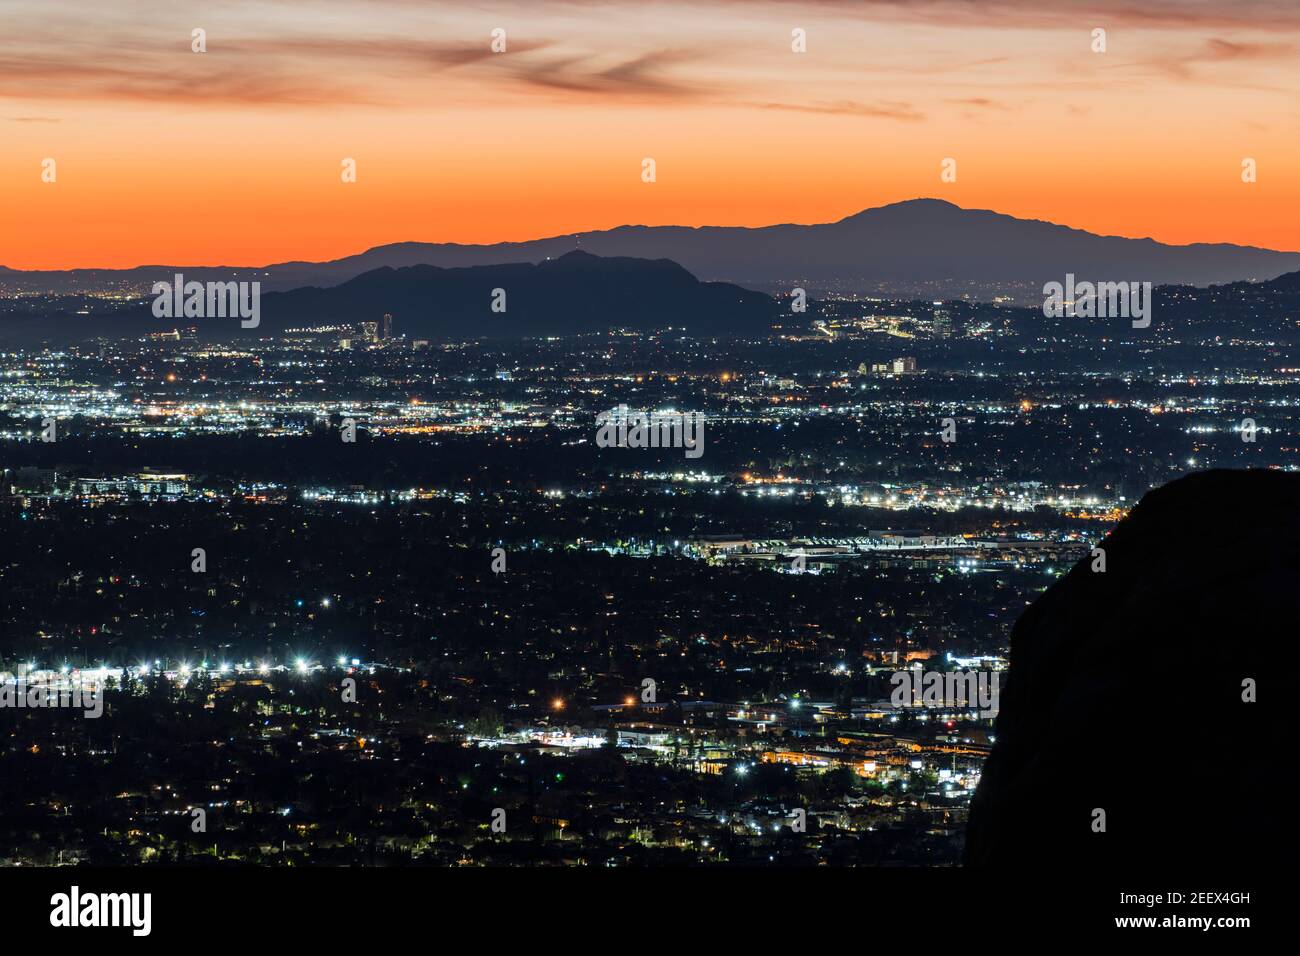 Vista panoramica dell'alba della valle di Los Angeles dal passo di Santa Susana sopra la valle occidentale di San Fernando, nella California meridionale. Foto Stock